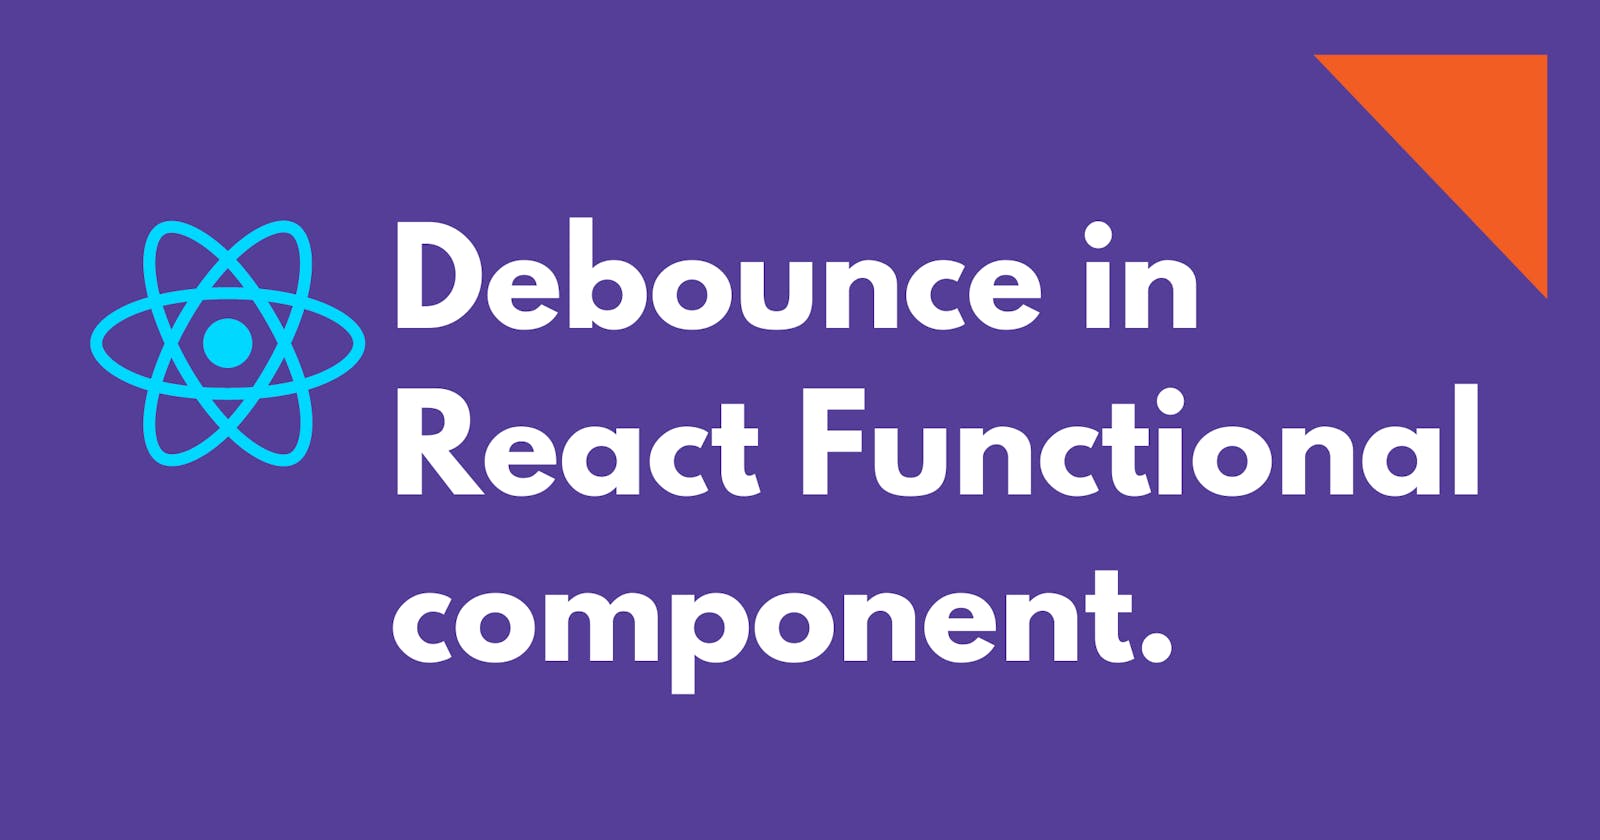 Debouncing in React using custom Hook